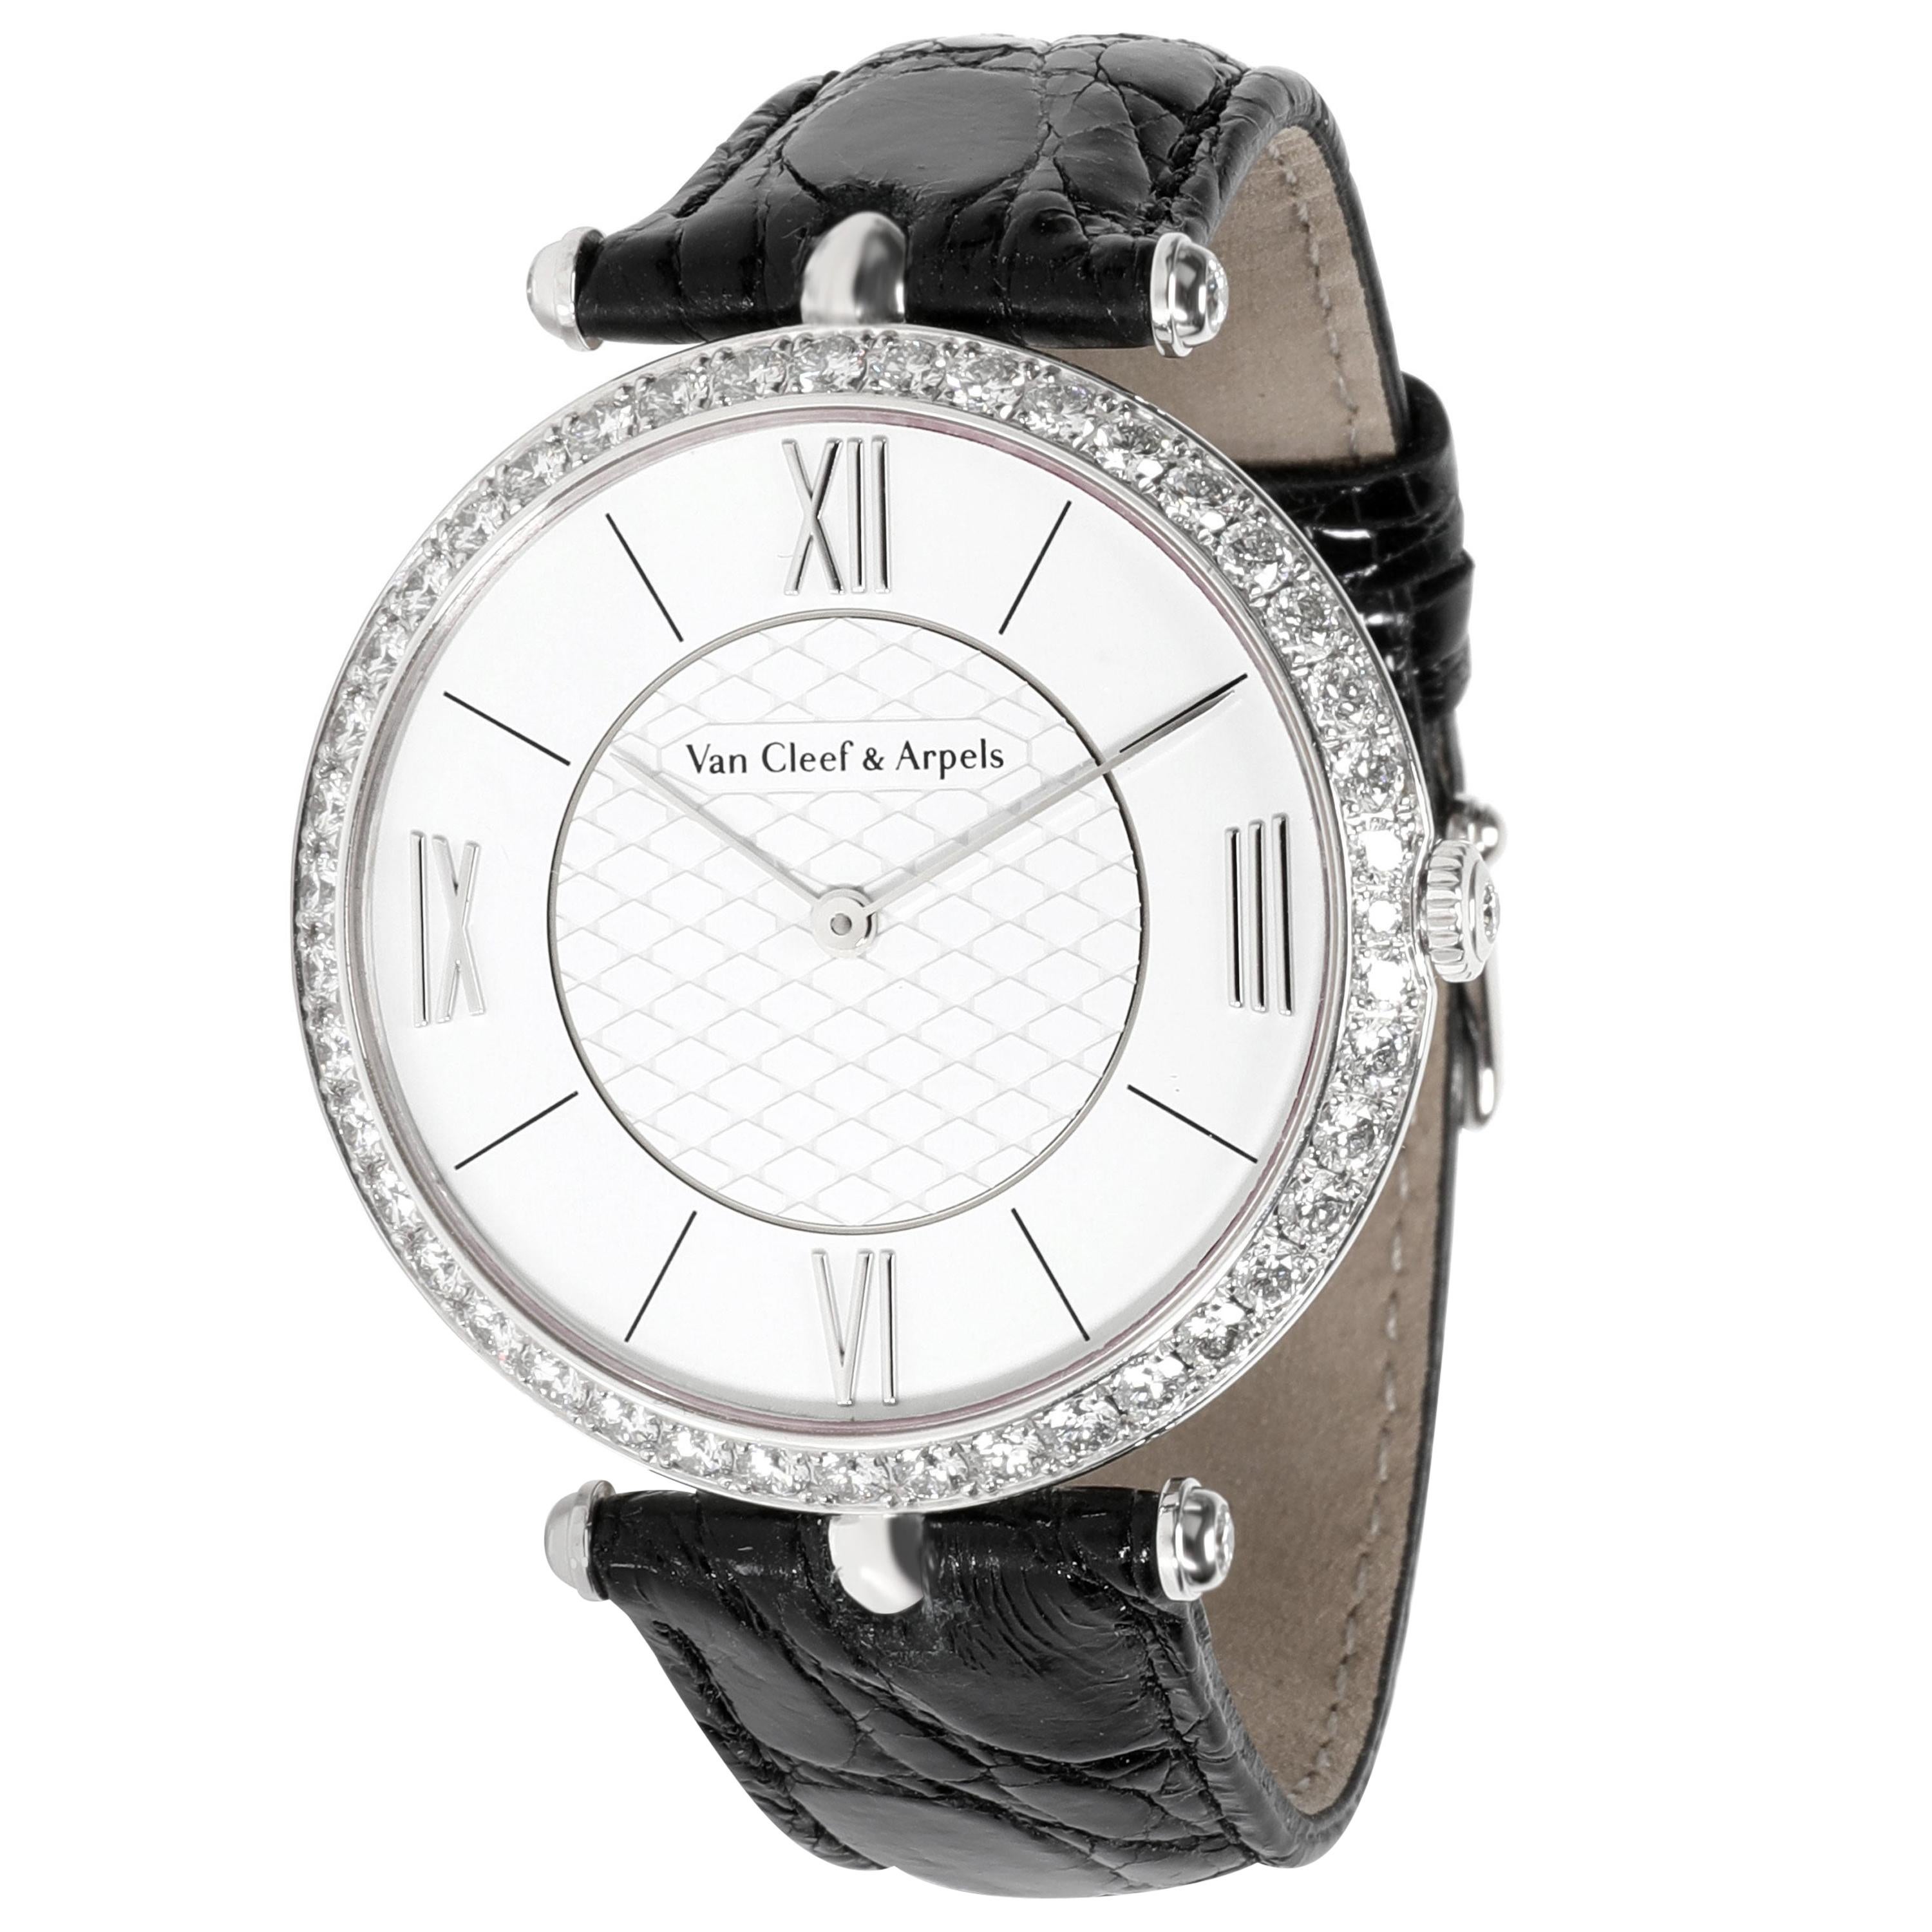 Van Cleef & Arpels Pierre Arpels VCARO3GJ00 Unisex Watch in 18 Karat White Gold